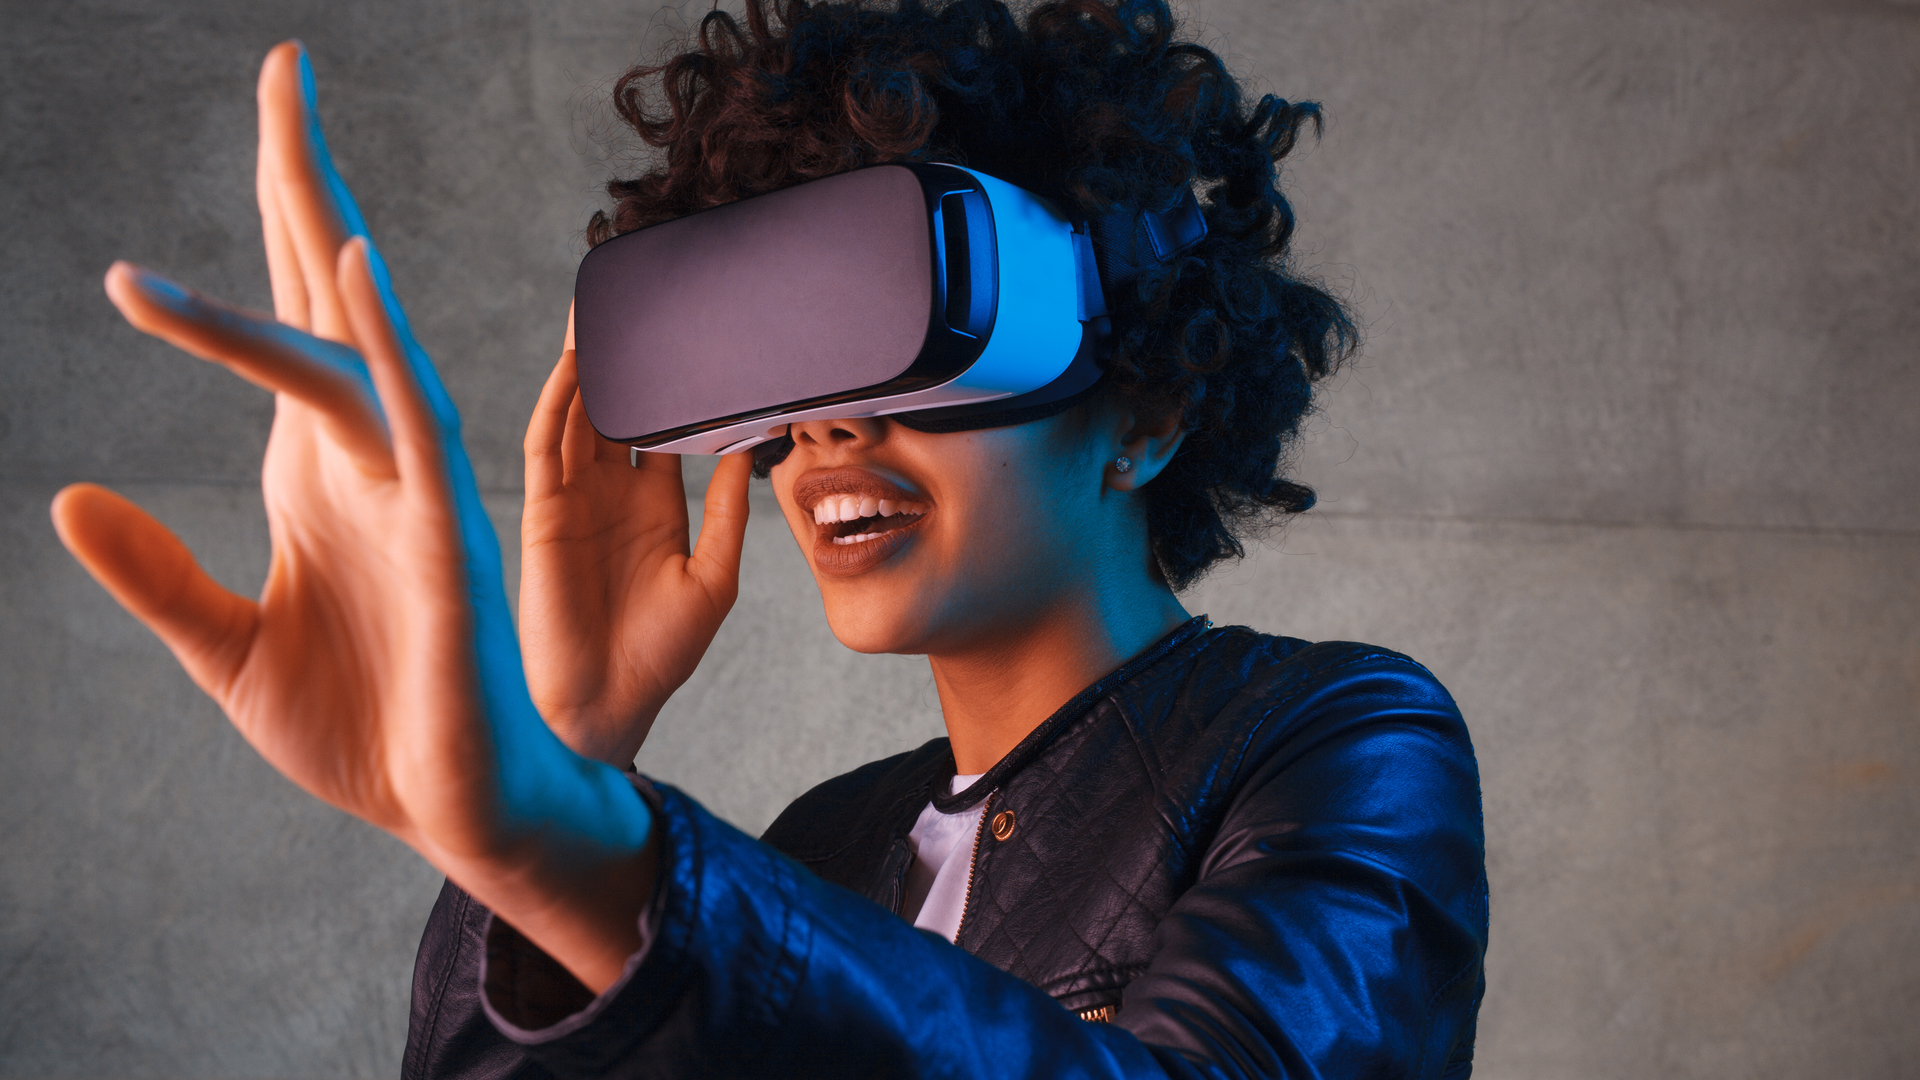 Merek dagang realityOS ini mengisyaratkan peluncuran headset AR/VR Apple yang akan segera terjadi